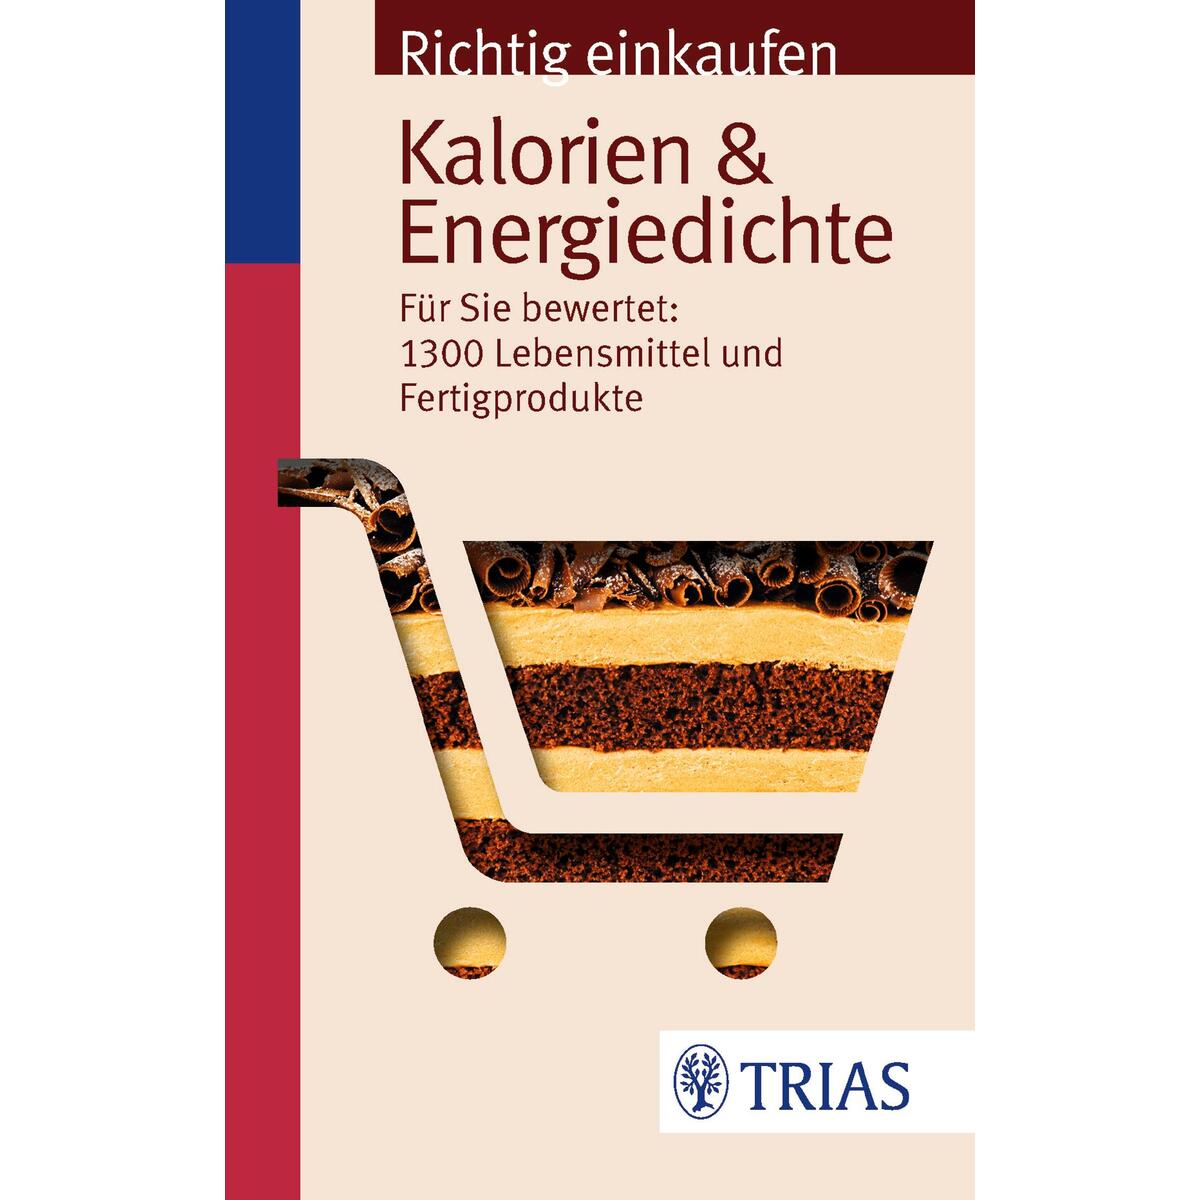 Richtig einkaufen: Kalorien & Energiedichte von Trias